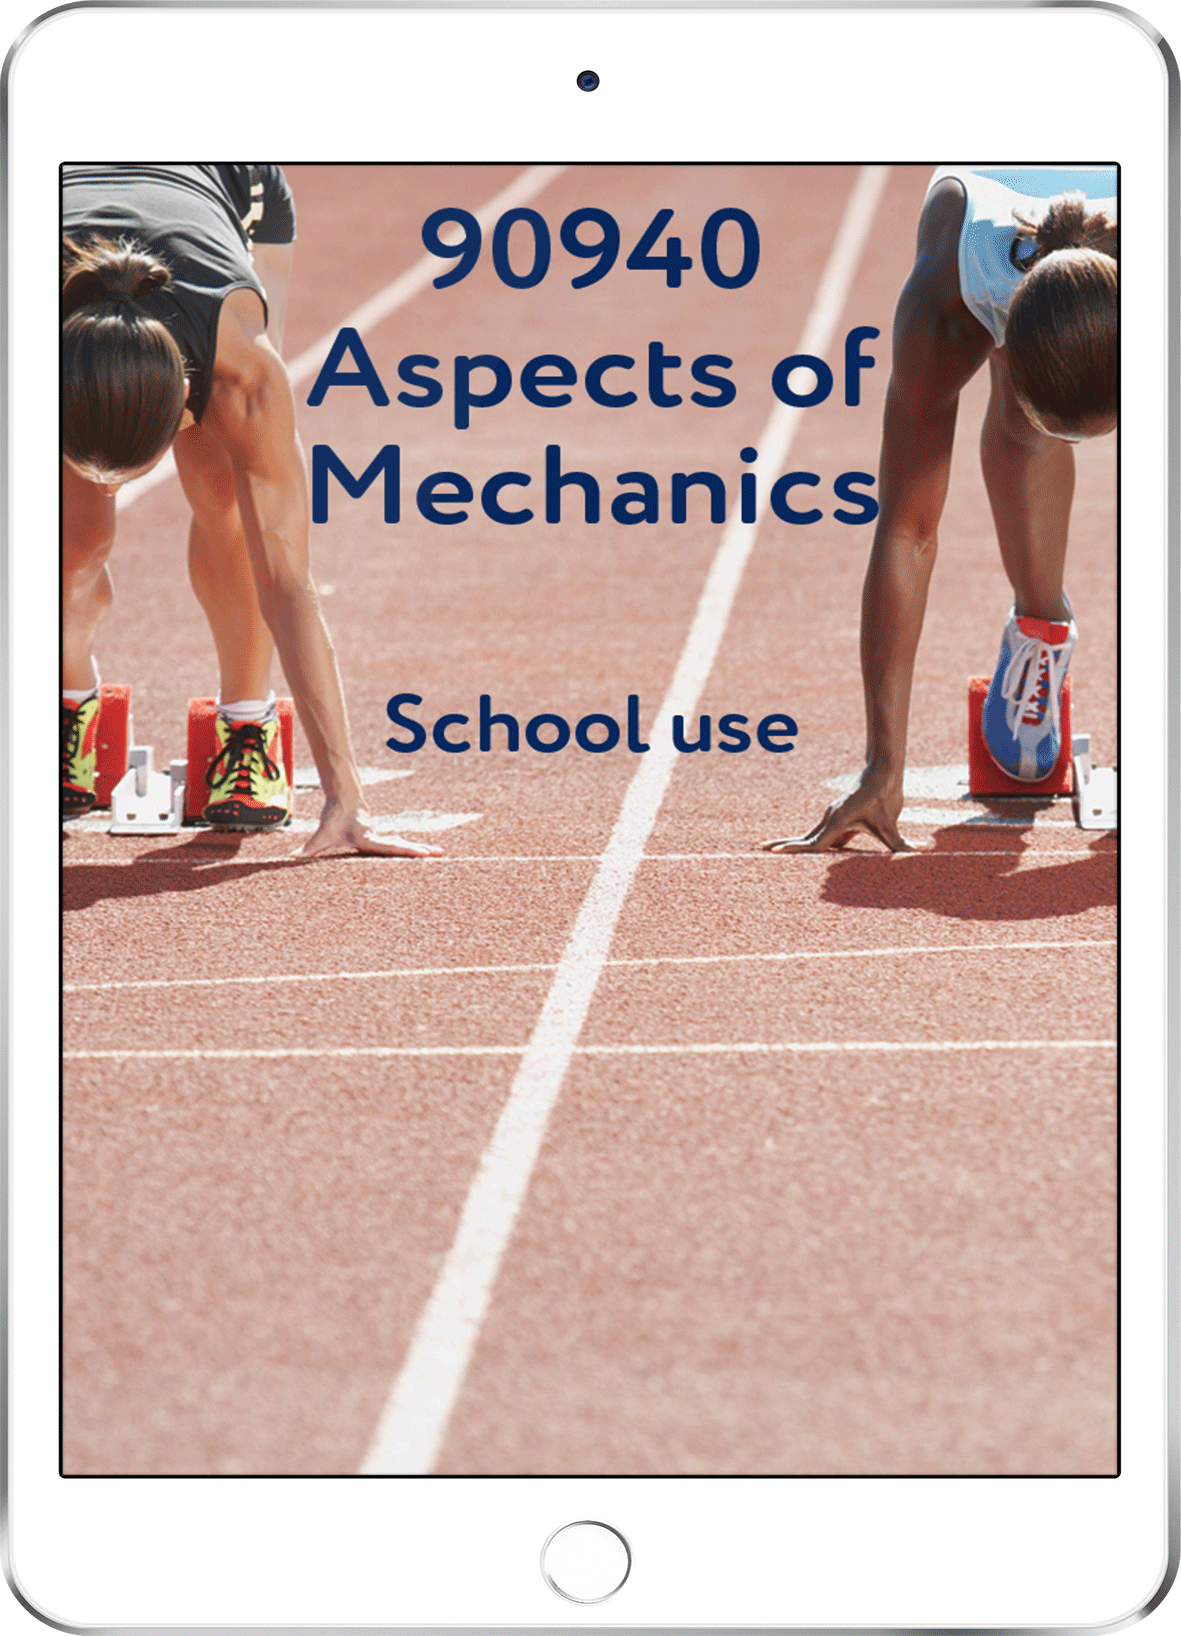 90940 Aspects of Mechanics - School Use